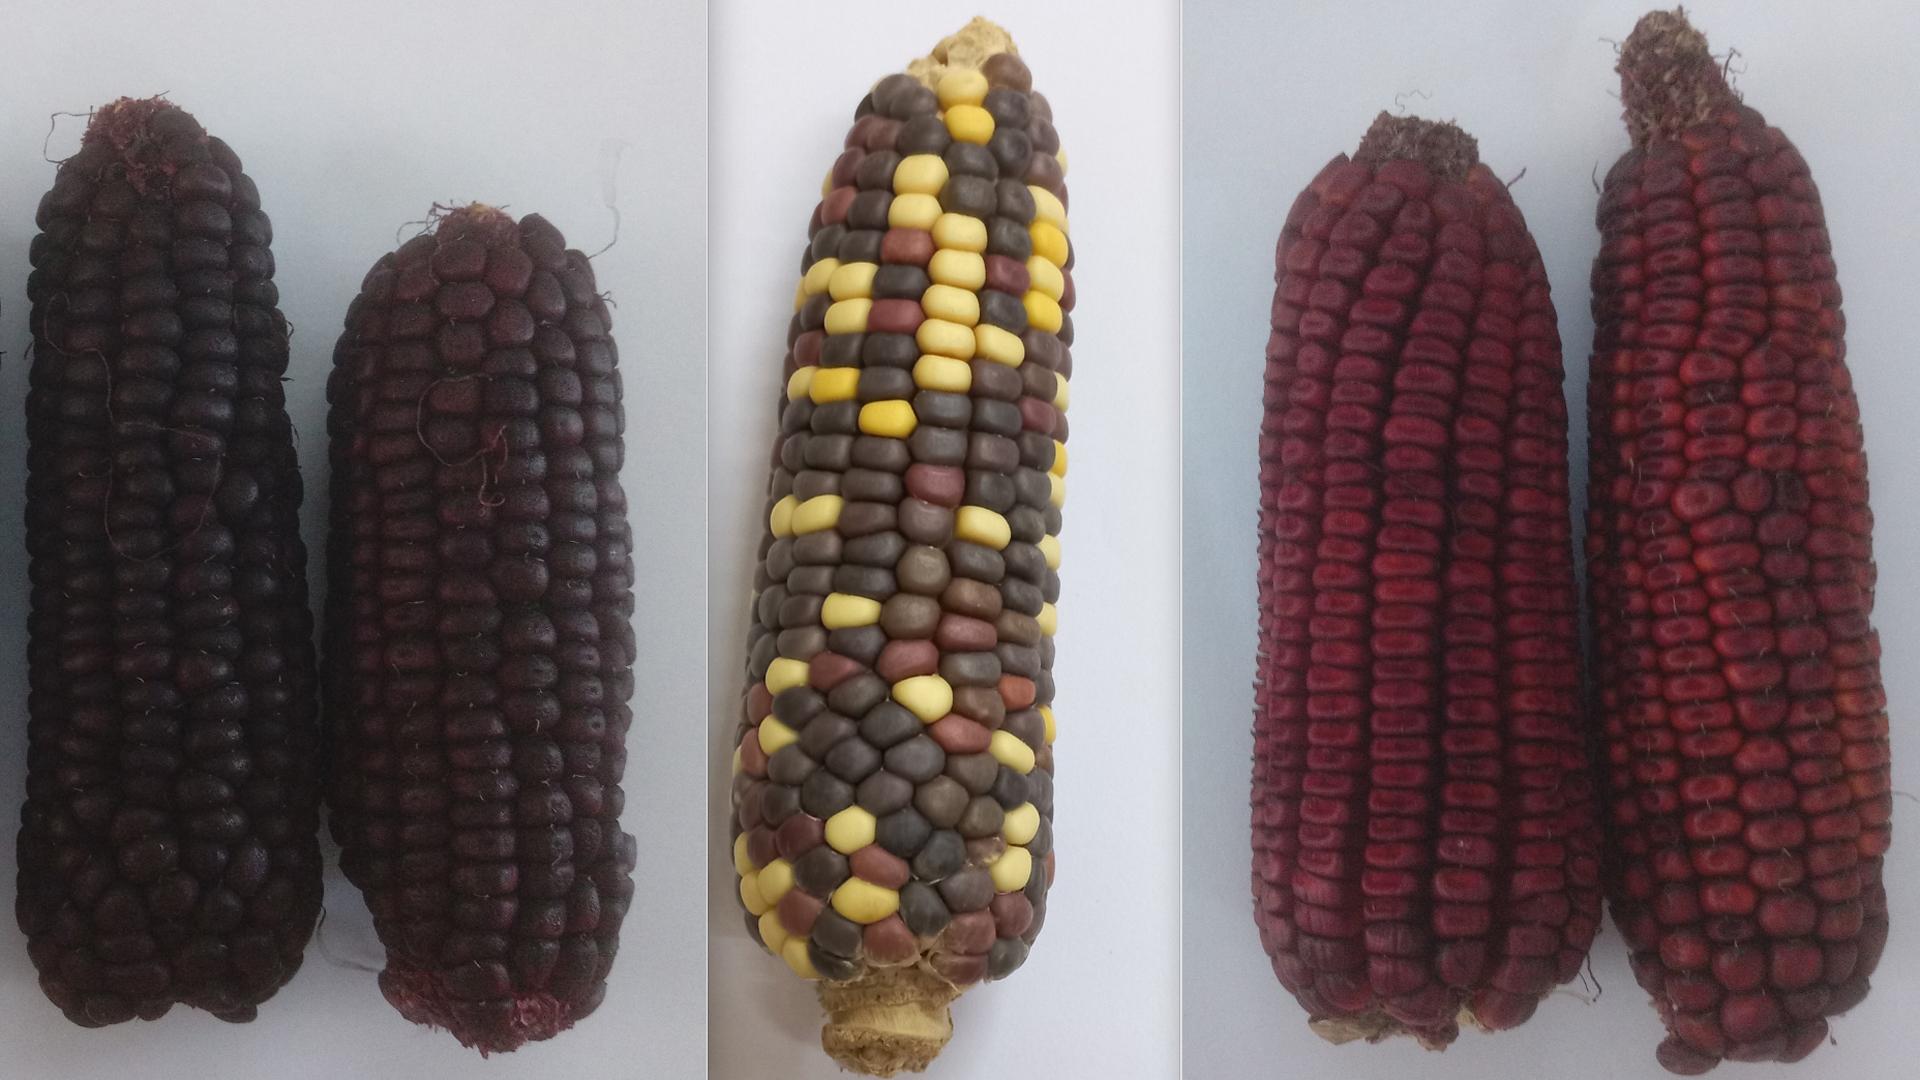 Maize varieties